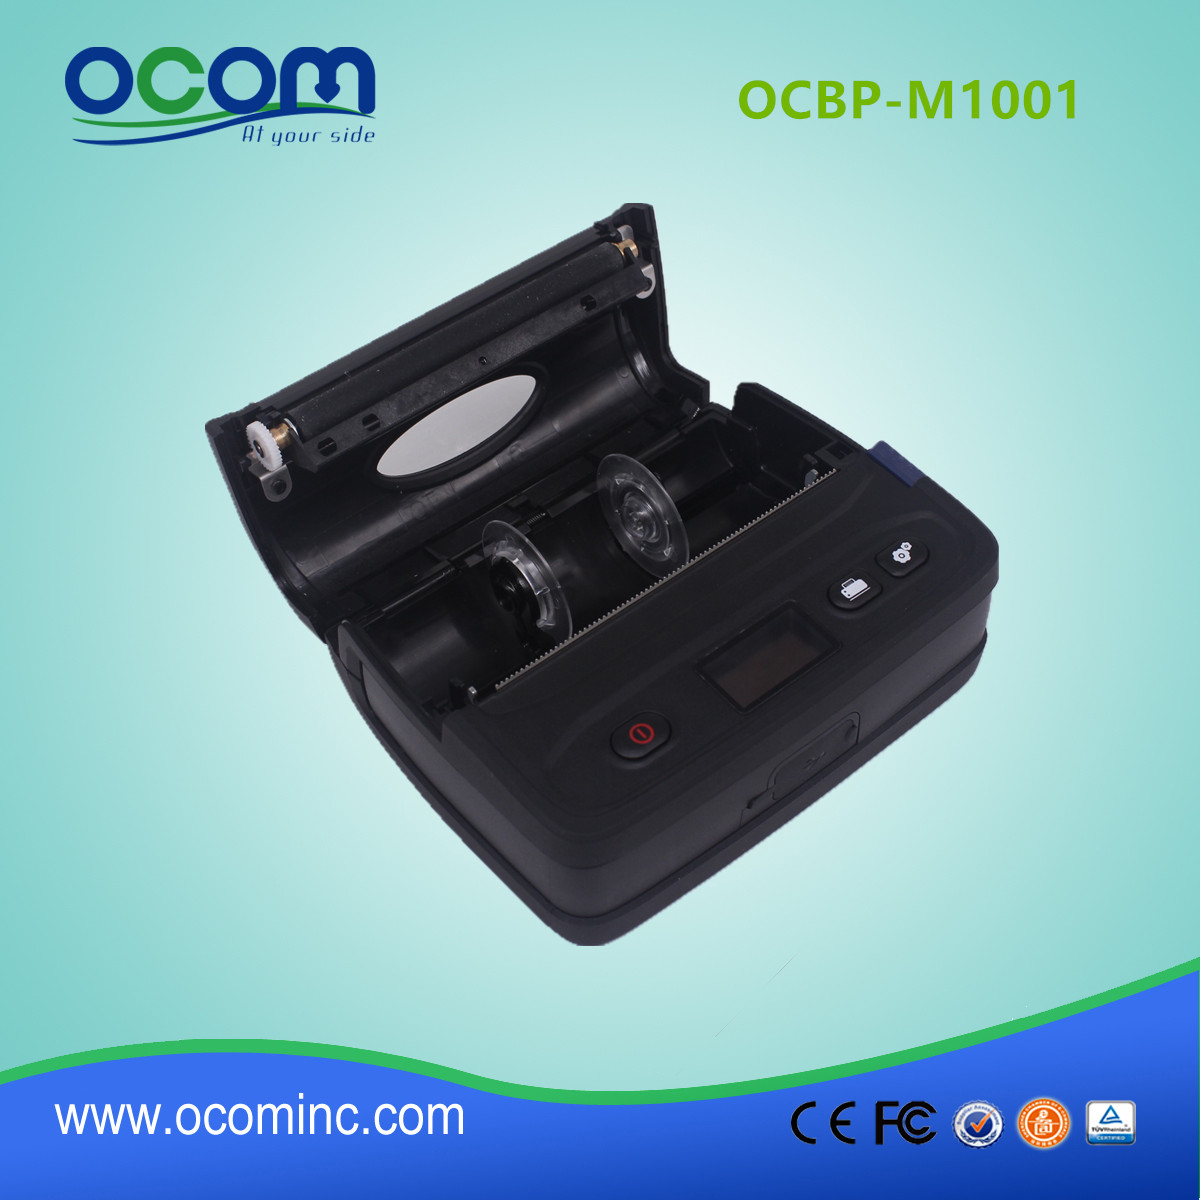 Impressora de etiquetas de código de barras Bluetooth portátil de 4 "- OCBP-M1001